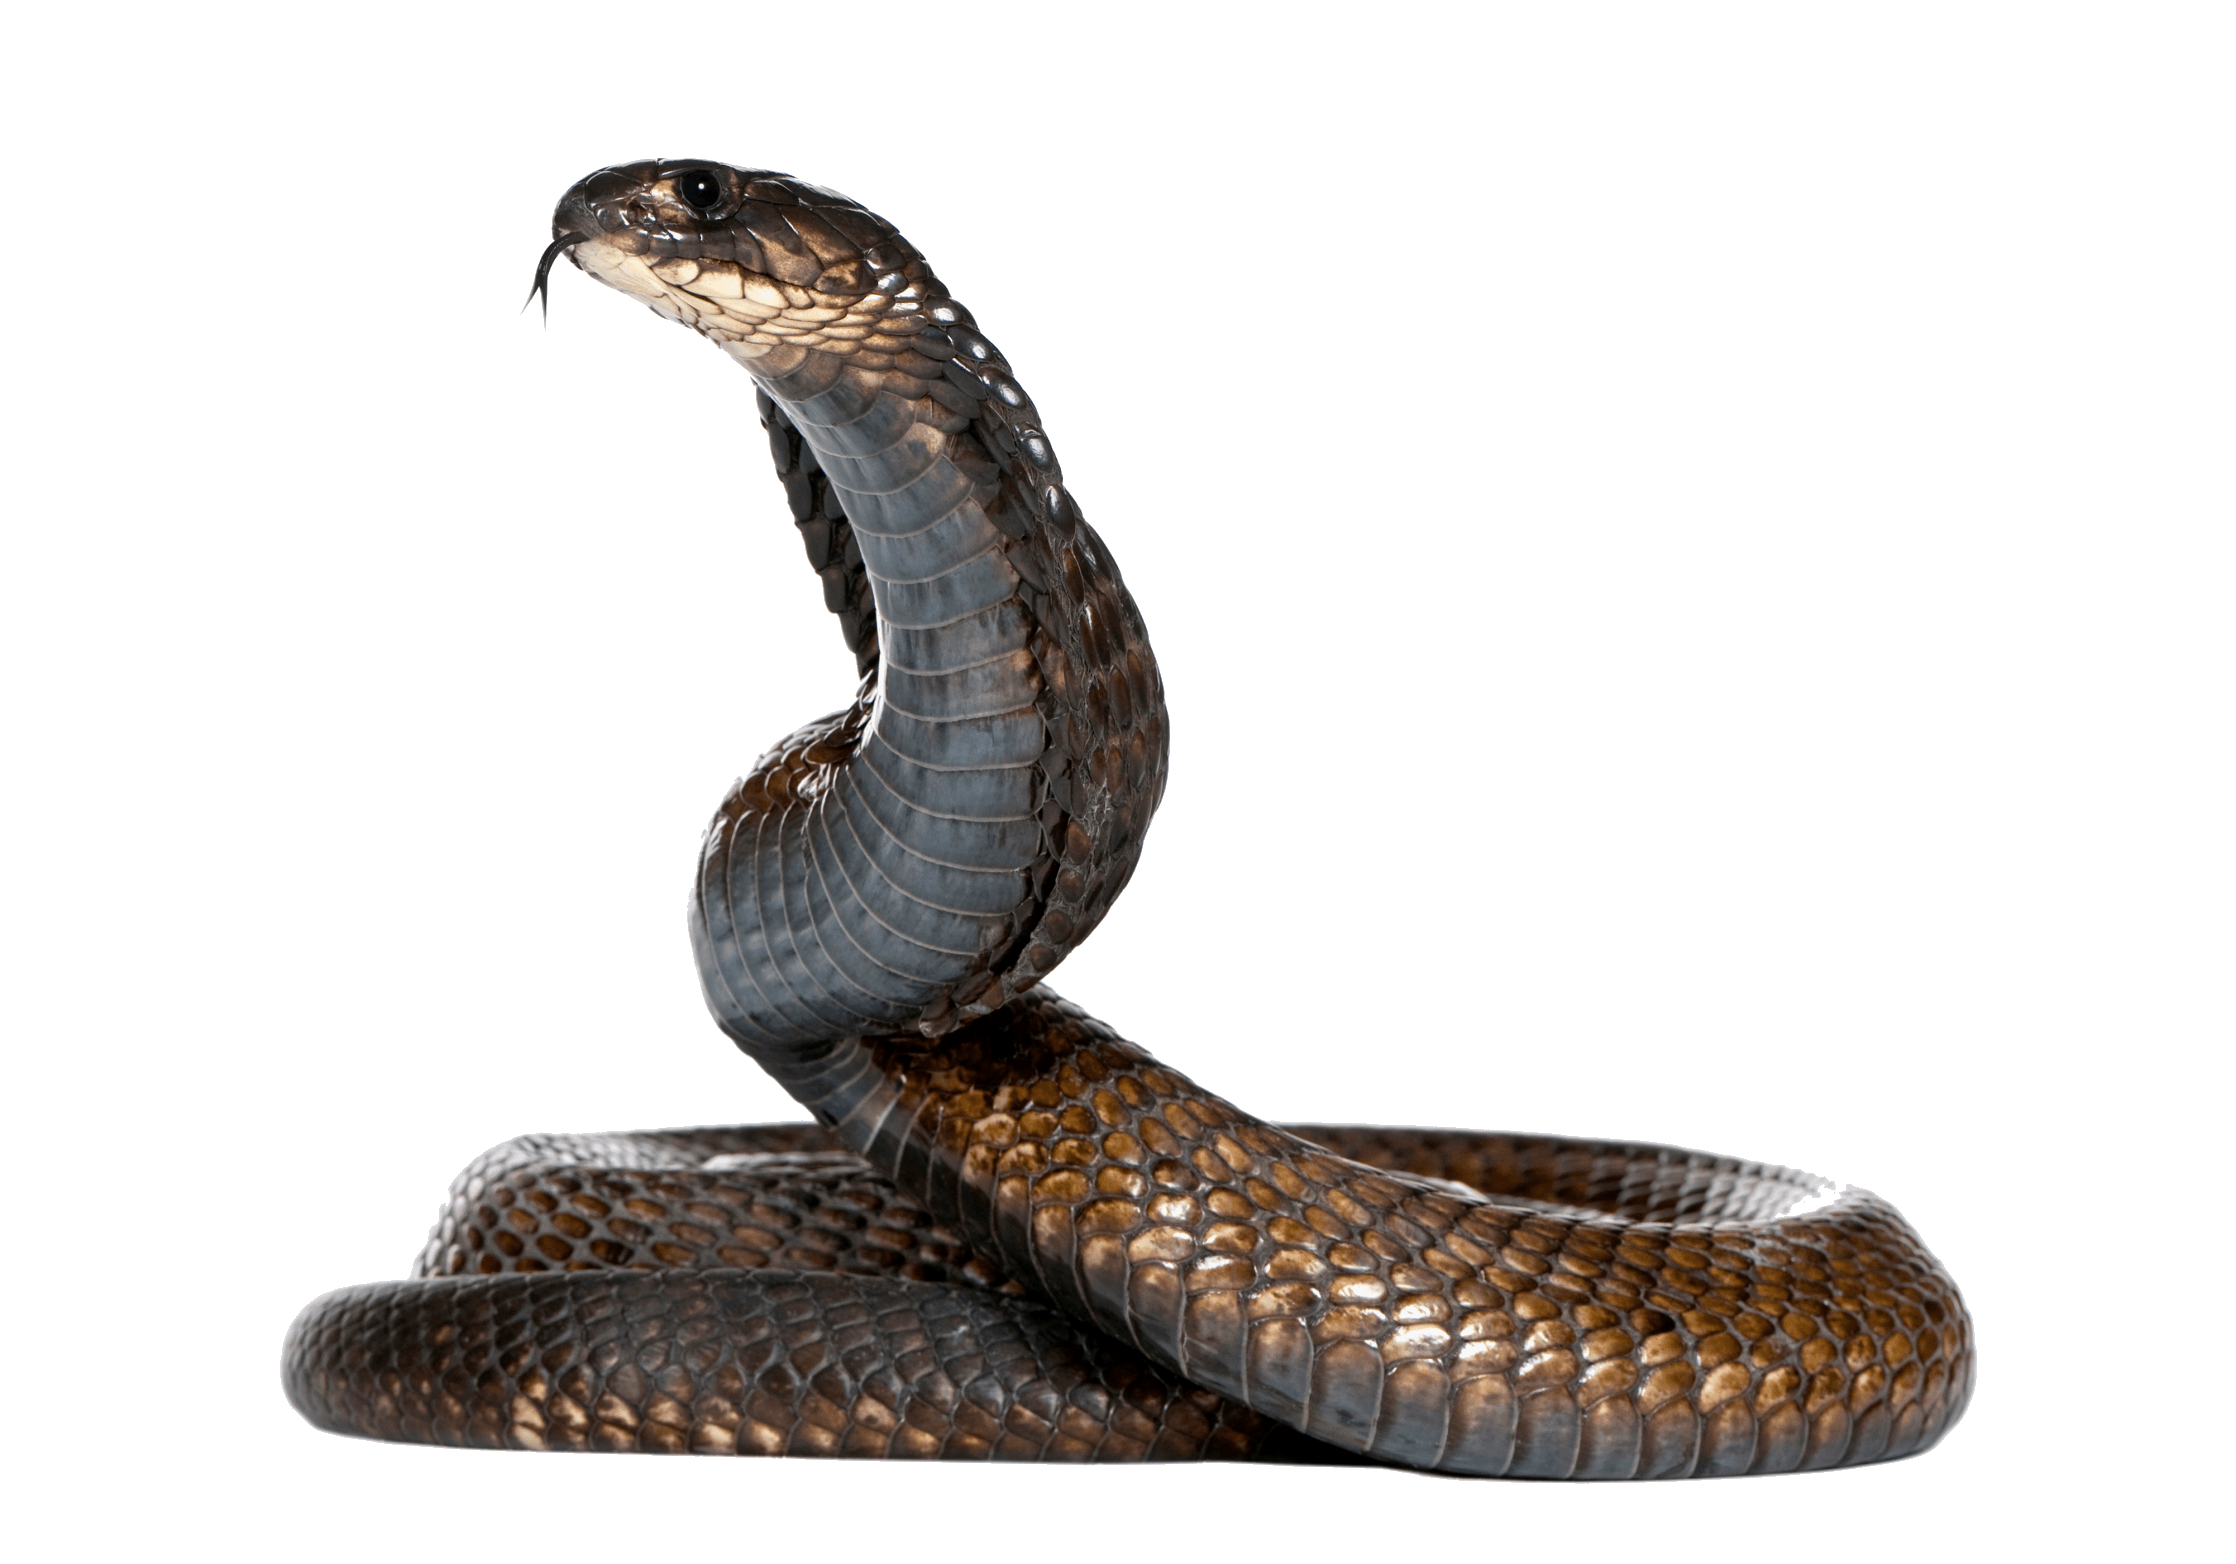 Cobra Snake Png Image Png Image - Snake, Transparent background PNG HD thumbnail